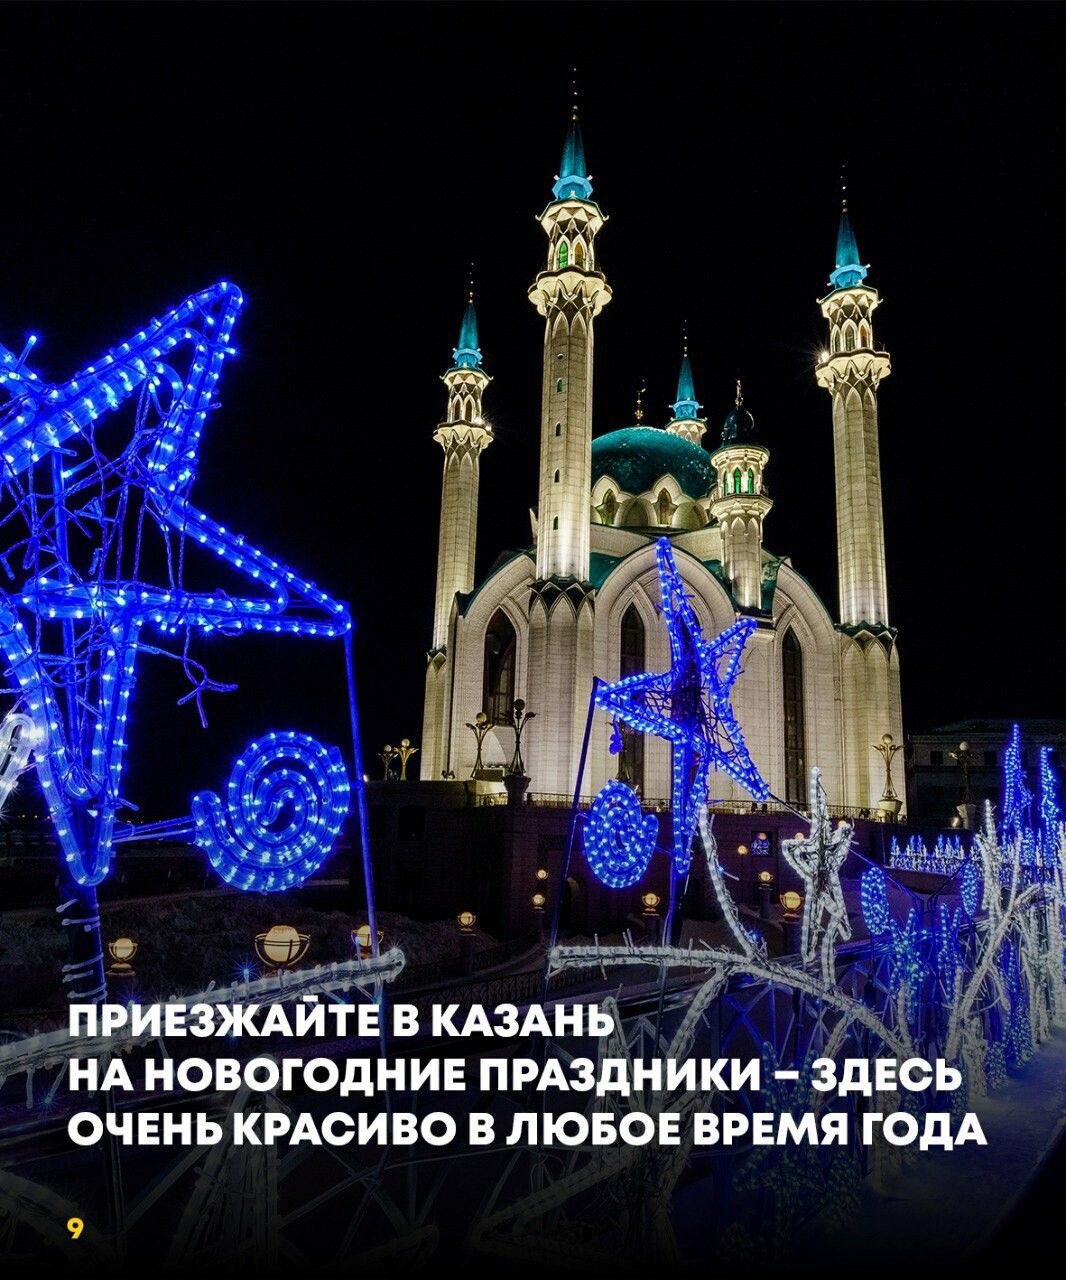 Столица Татарстана подтверждает репутацию популярного места для путешествий на Новый год